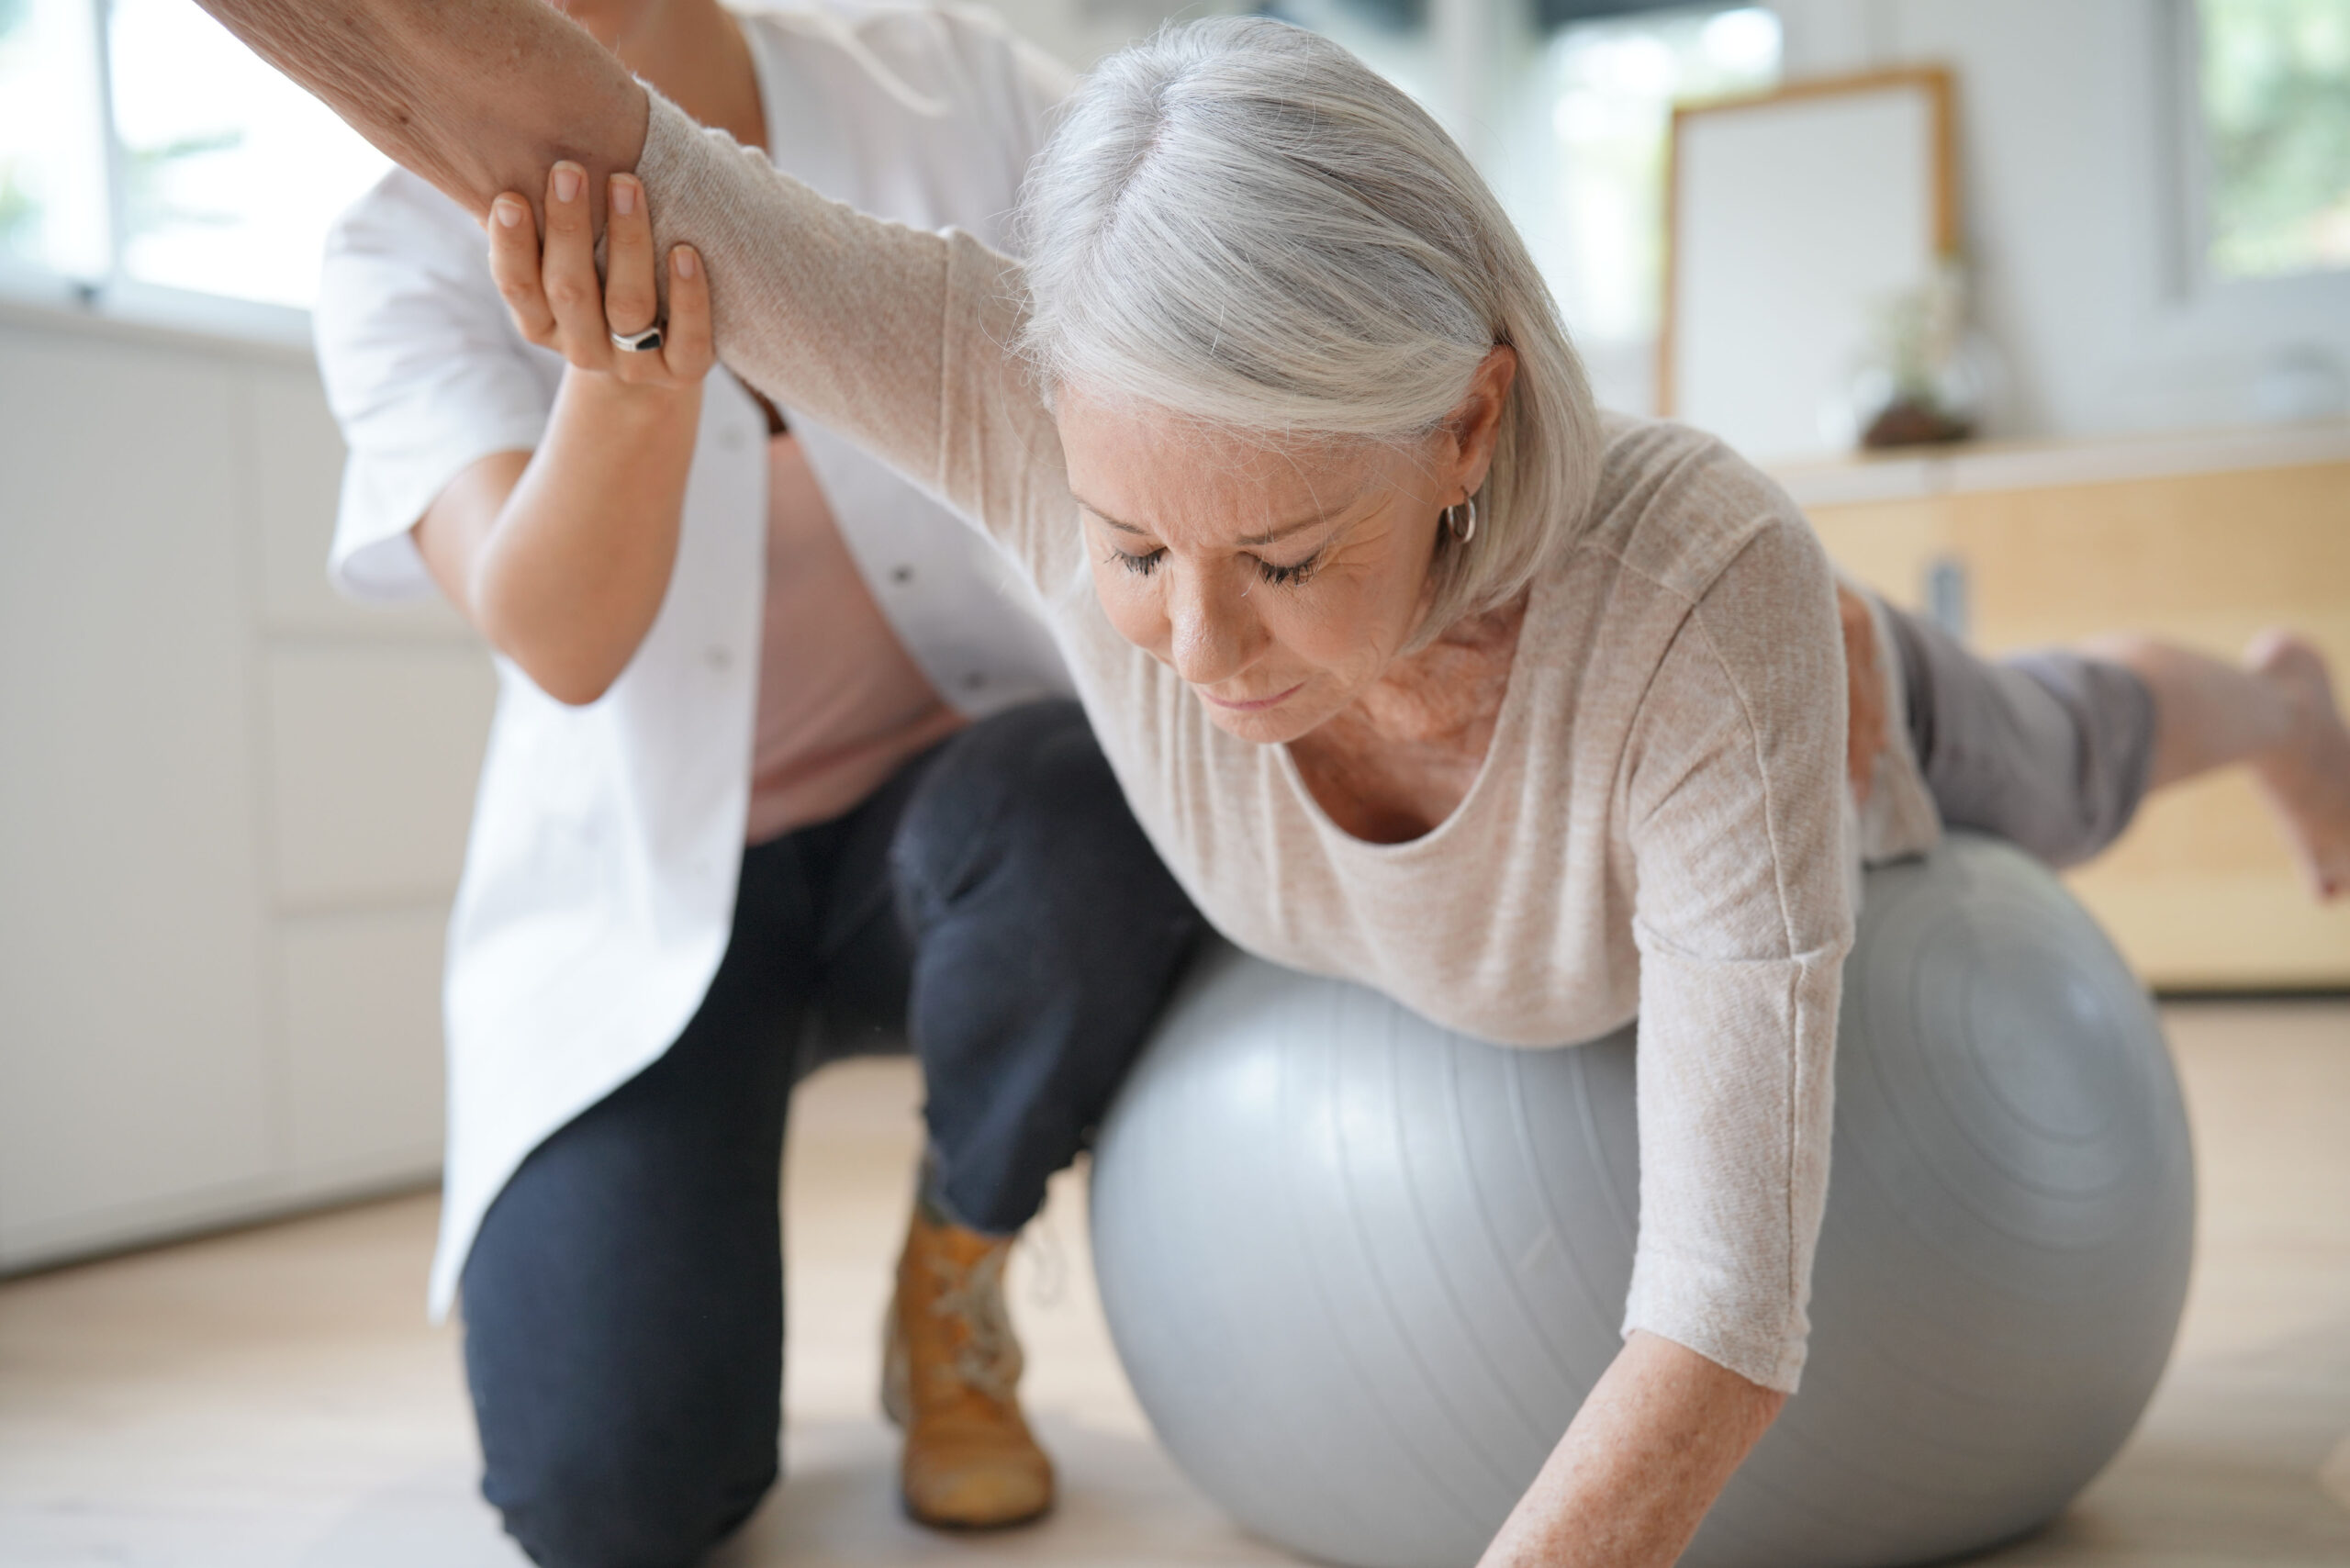 Problemas de espalda en la tercera edad: Una mujer mayor realiza con la ayuda de un fisioterapeuta ejercicios para mejorar la postura de la espalda ayudándose de una pelota de goma y apoyando su cuerpo en ella.